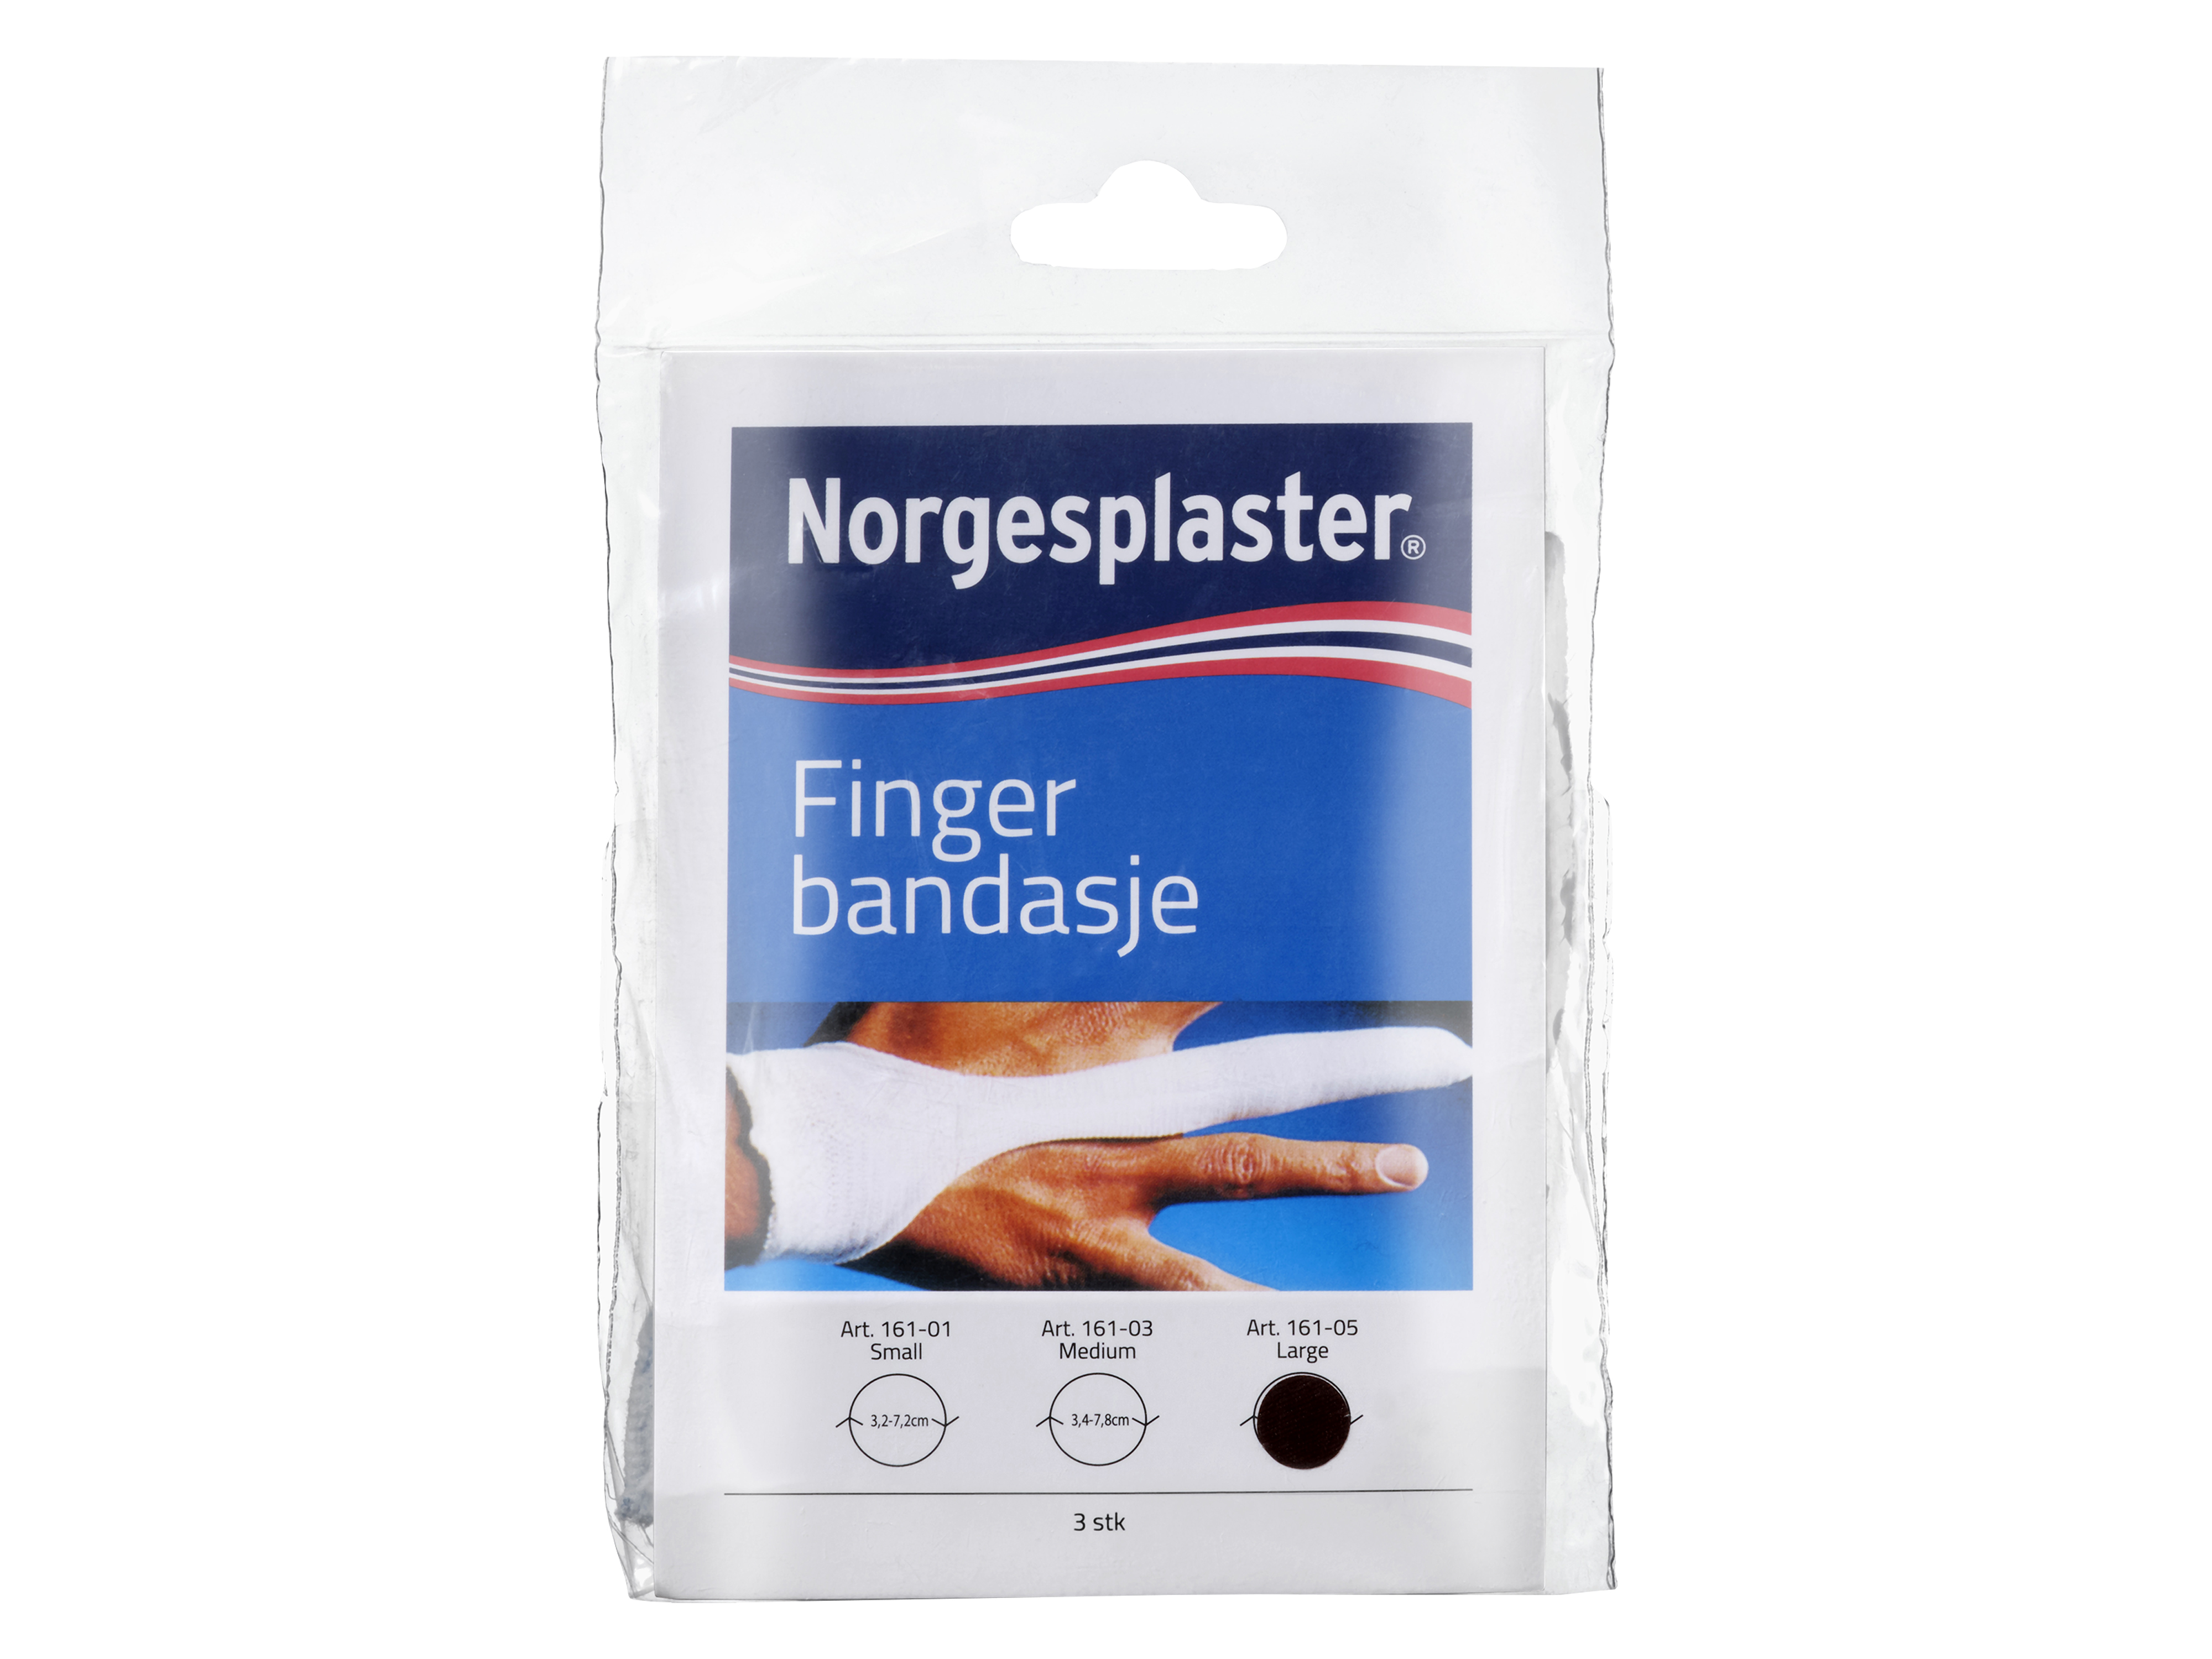 Norgesplaster Fingerbandasje, Large, 3 stk.